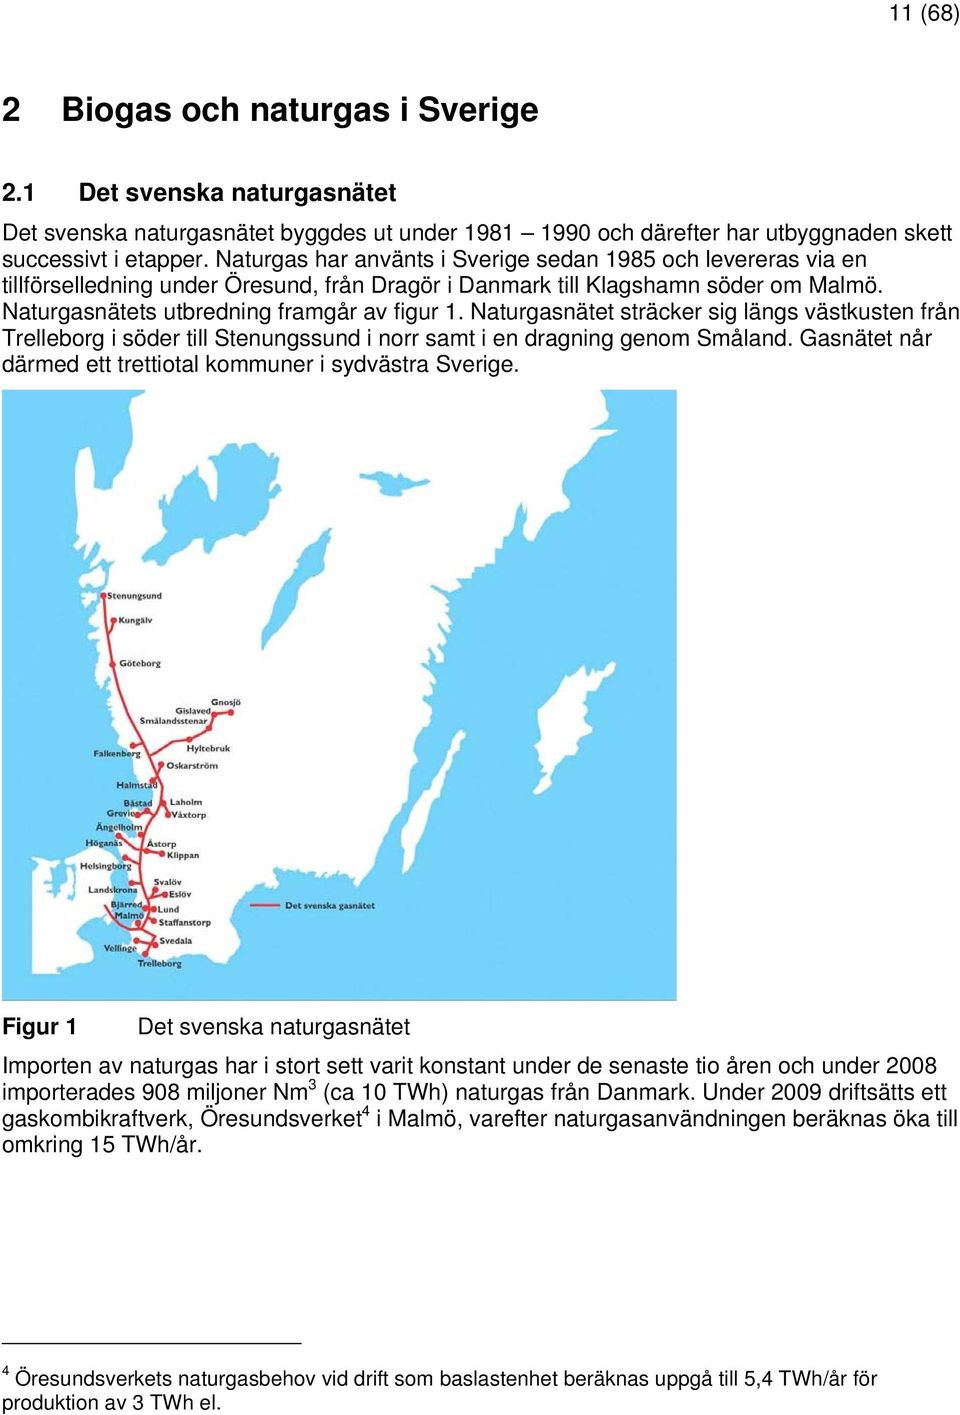 Naturgasnätet sträcker sig längs västkusten från Trelleborg i söder till Stenungssund i norr samt i en dragning genom Småland. Gasnätet når därmed ett trettiotal kommuner i sydvästra Sverige.